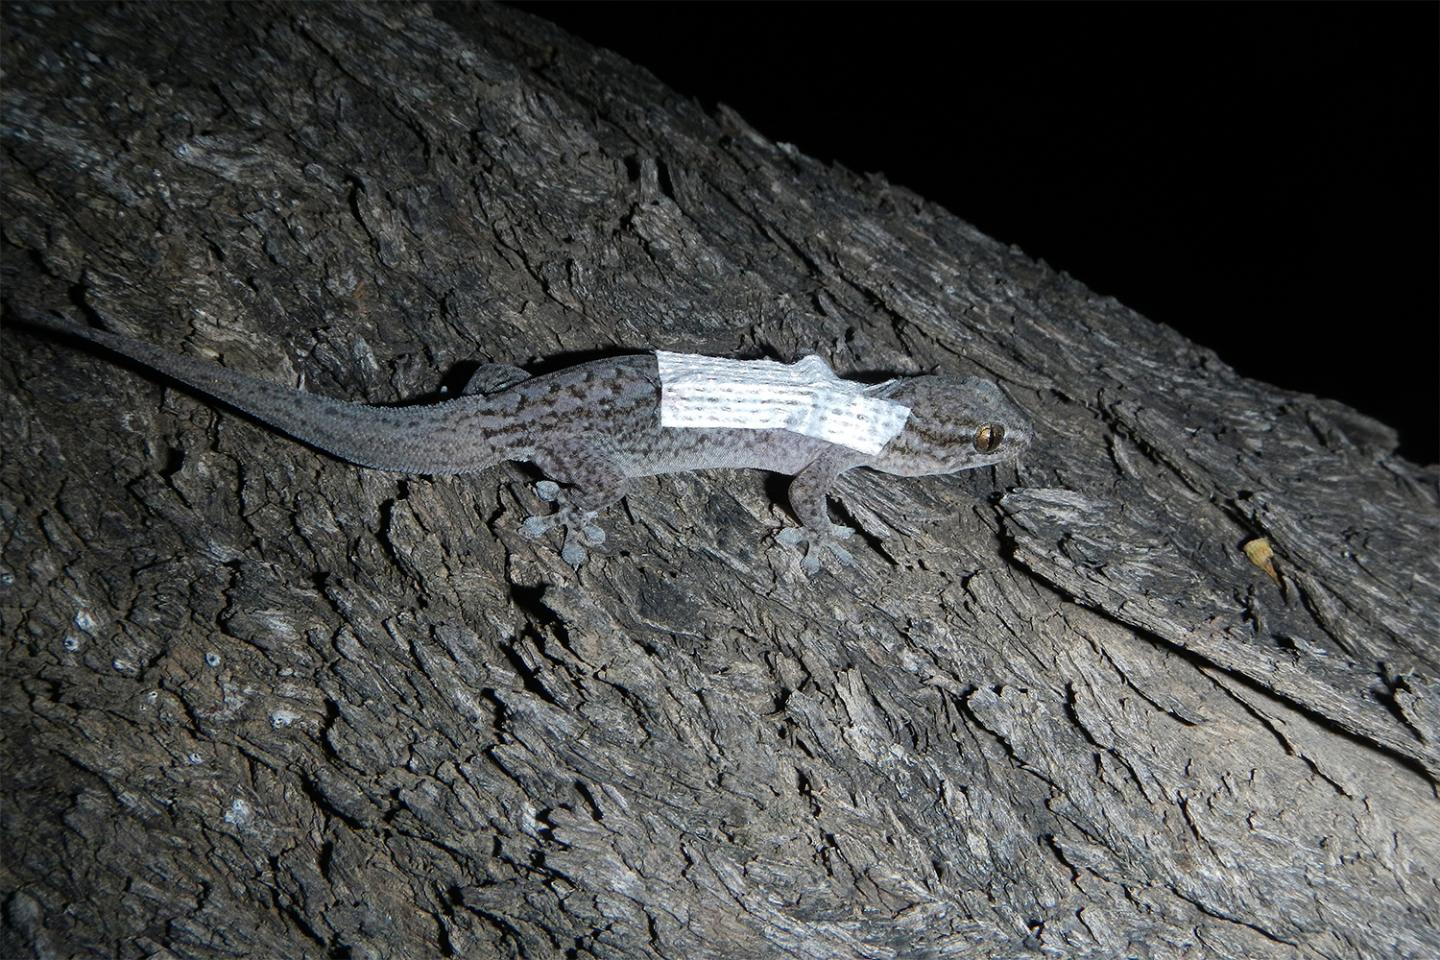 Photo1 An adult Gecko